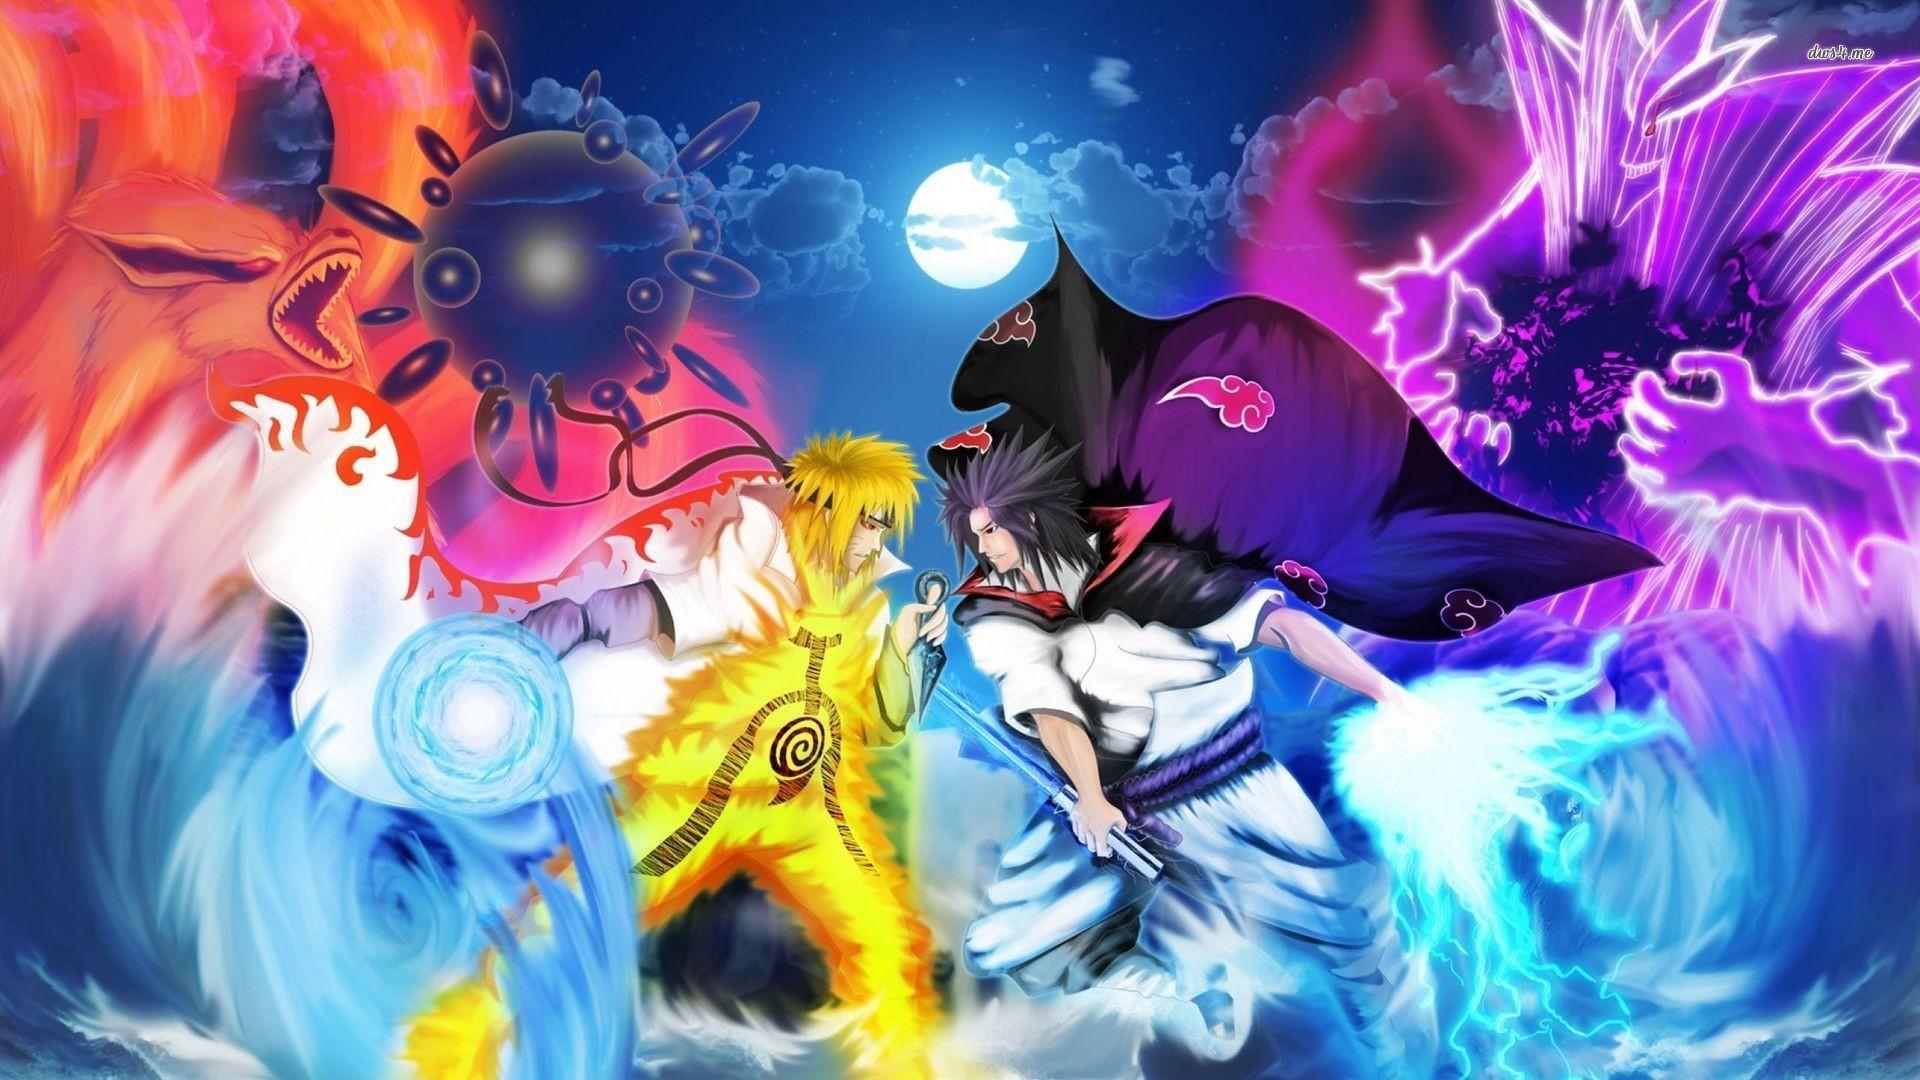 Naruto Vs Sasuke Wallpaper background picture